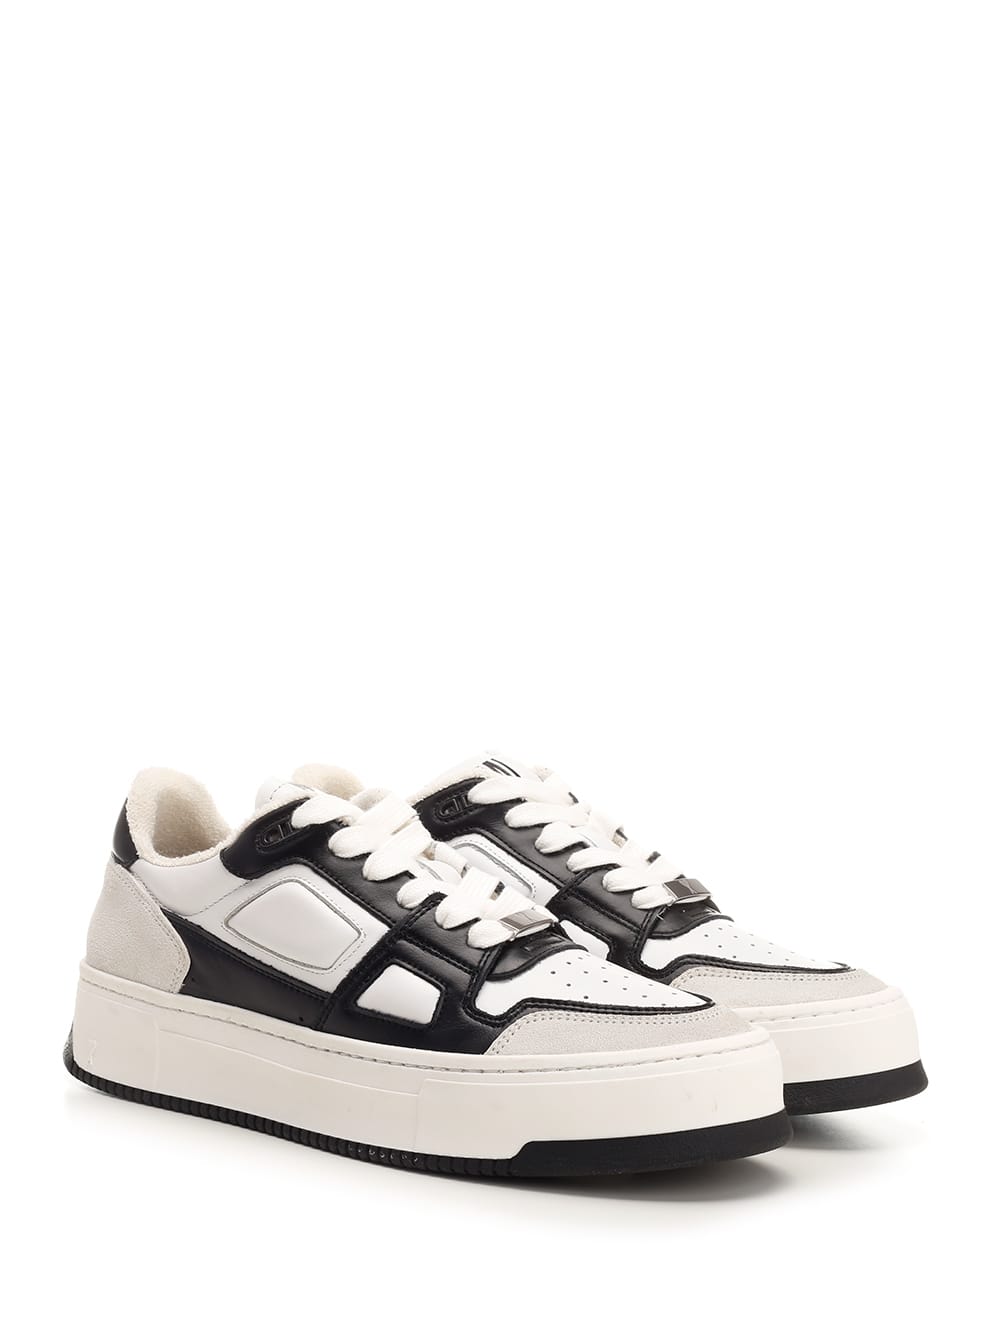 Shop Ami Alexandre Mattiussi Arcade Sneakers In White/black